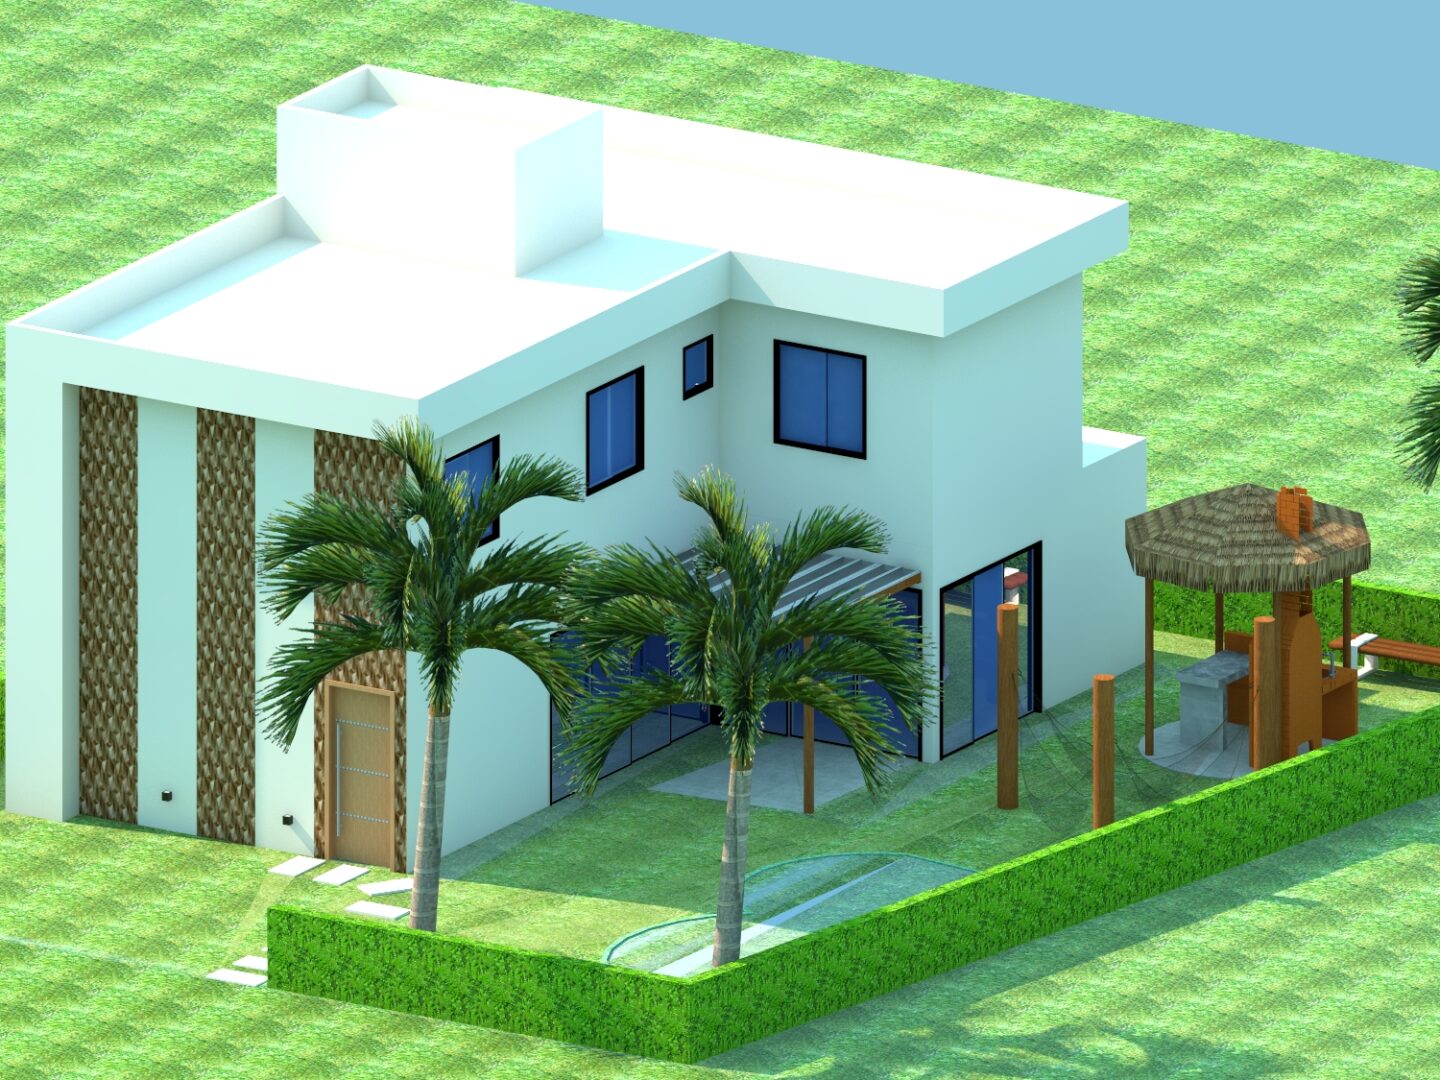 Maquete 3D de uma casa do "Projeto Maragogi" com palmeiras.